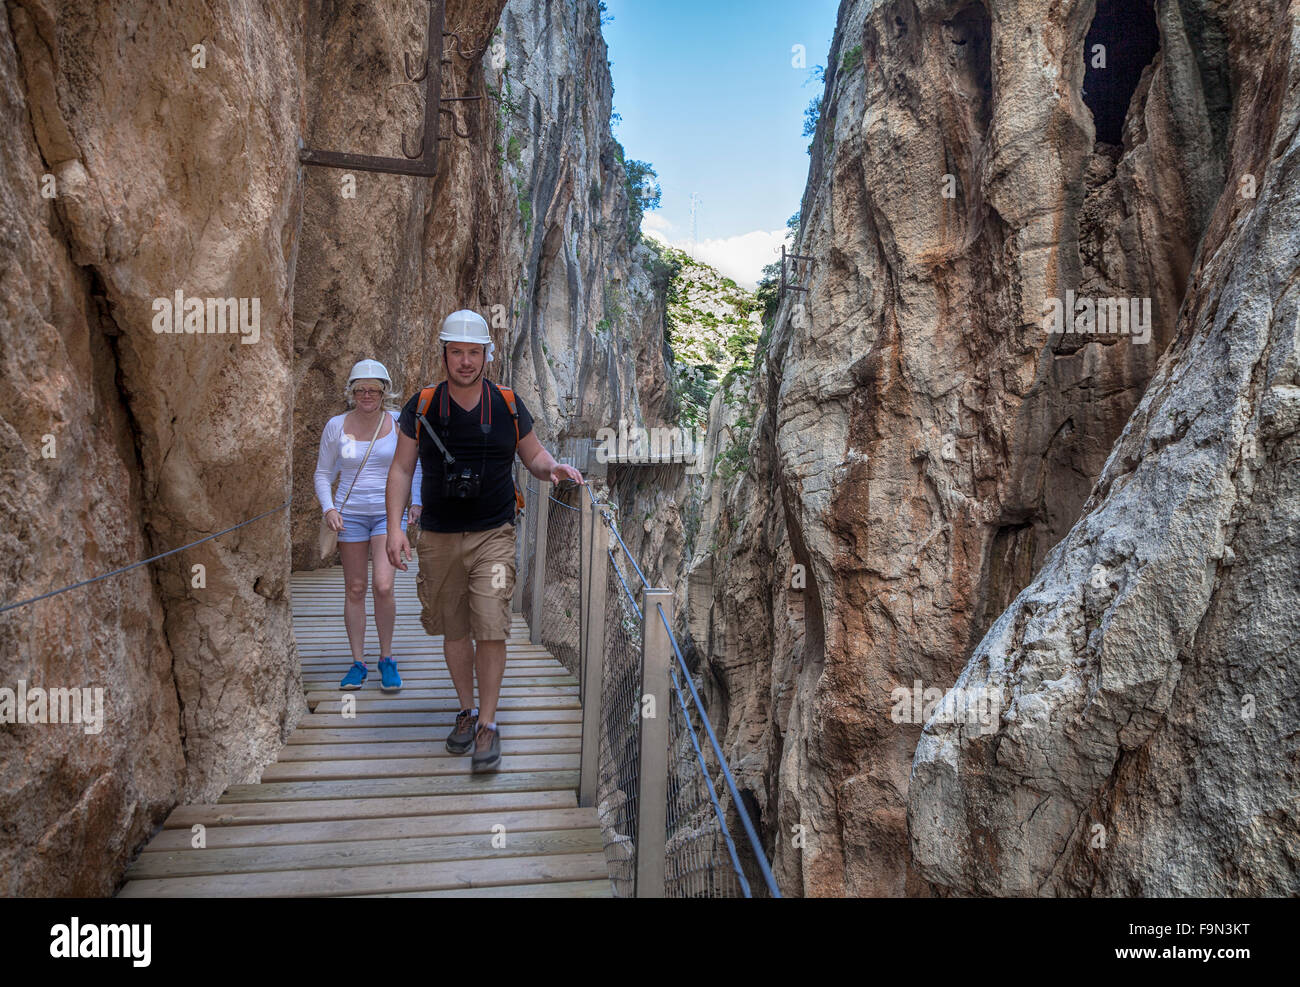 Les promeneurs sur El Caminito del Rey passerelle, épinglé sur les murs escarpés d'une gorge étroite à El Chorro, Málaga, Andalousie, Espagne Banque D'Images